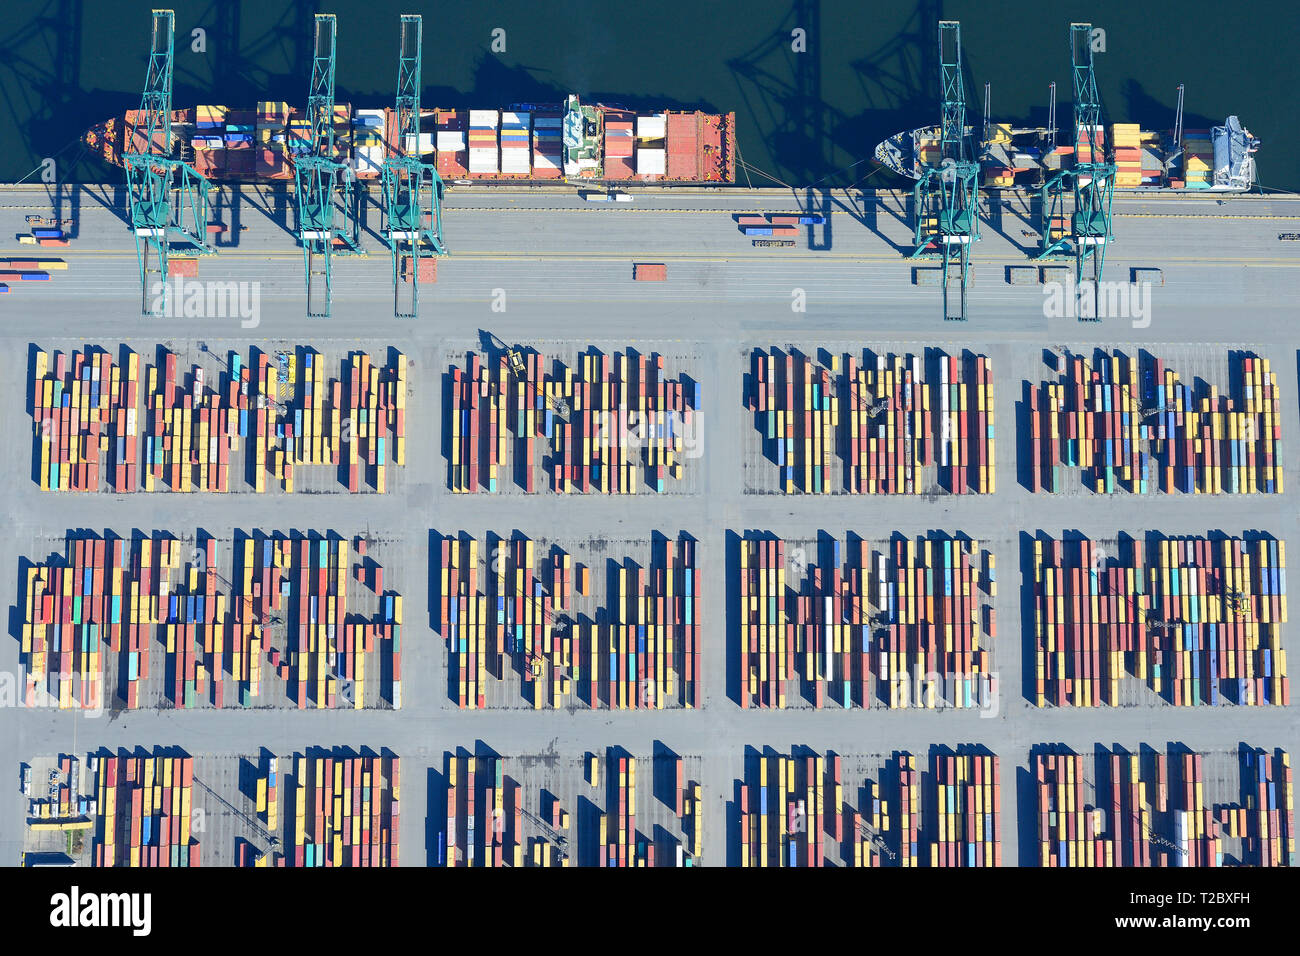 VUE AÉRIENNE VERTICALE.Conteneurs stockés temporairement sur un quai.Quai de Delwaide, port d'Anvers, Belgique. Banque D'Images